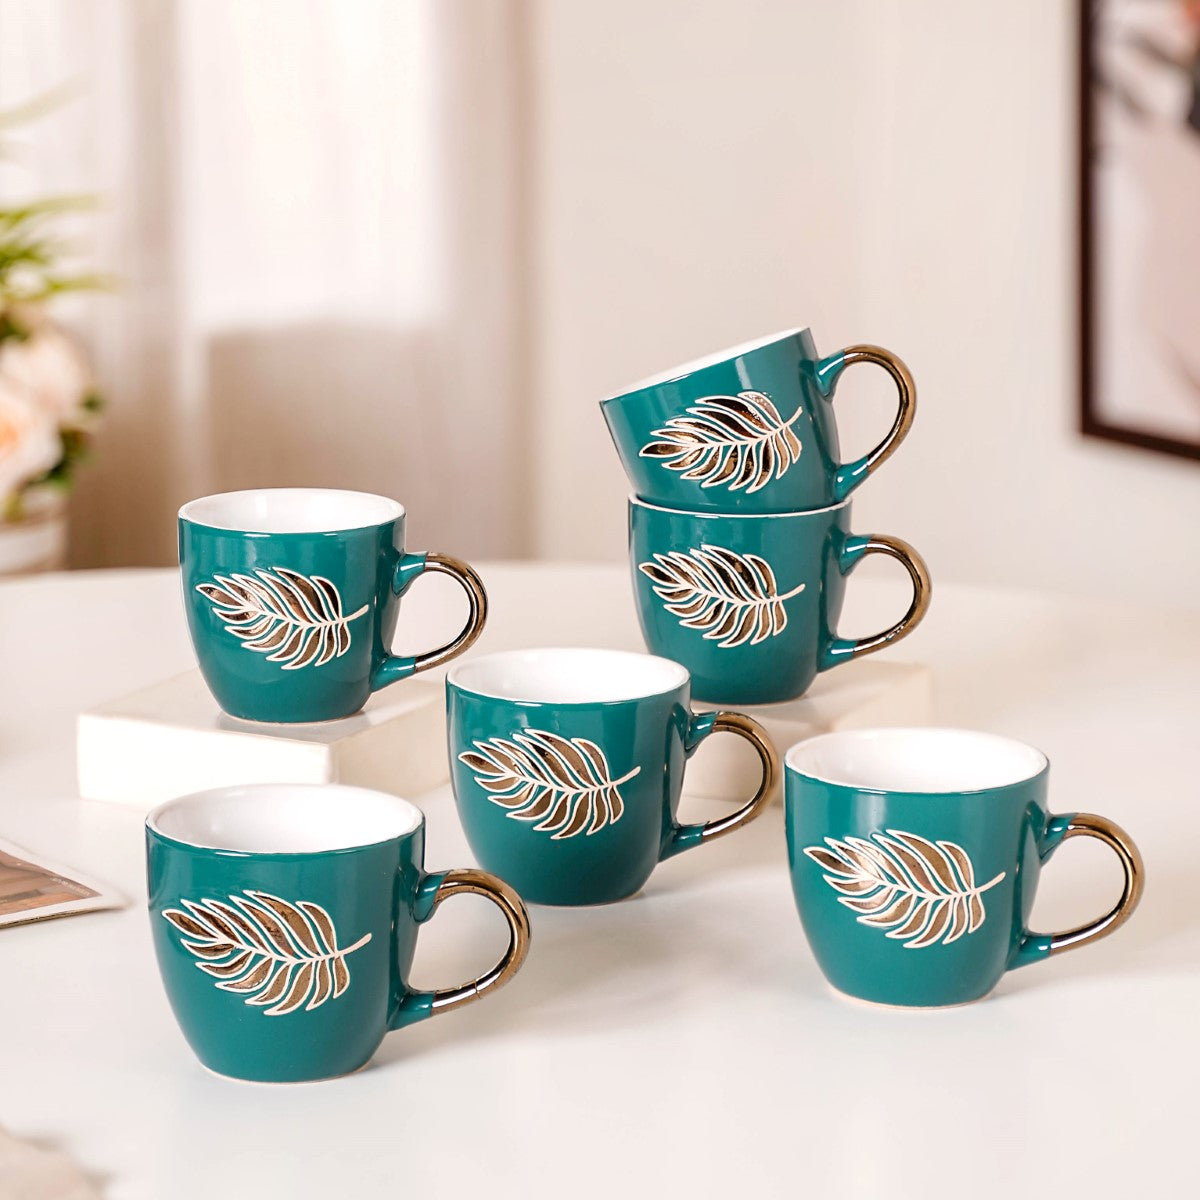 Premium Coffee Mugs - Shop Designer Cup Set At Best Prices